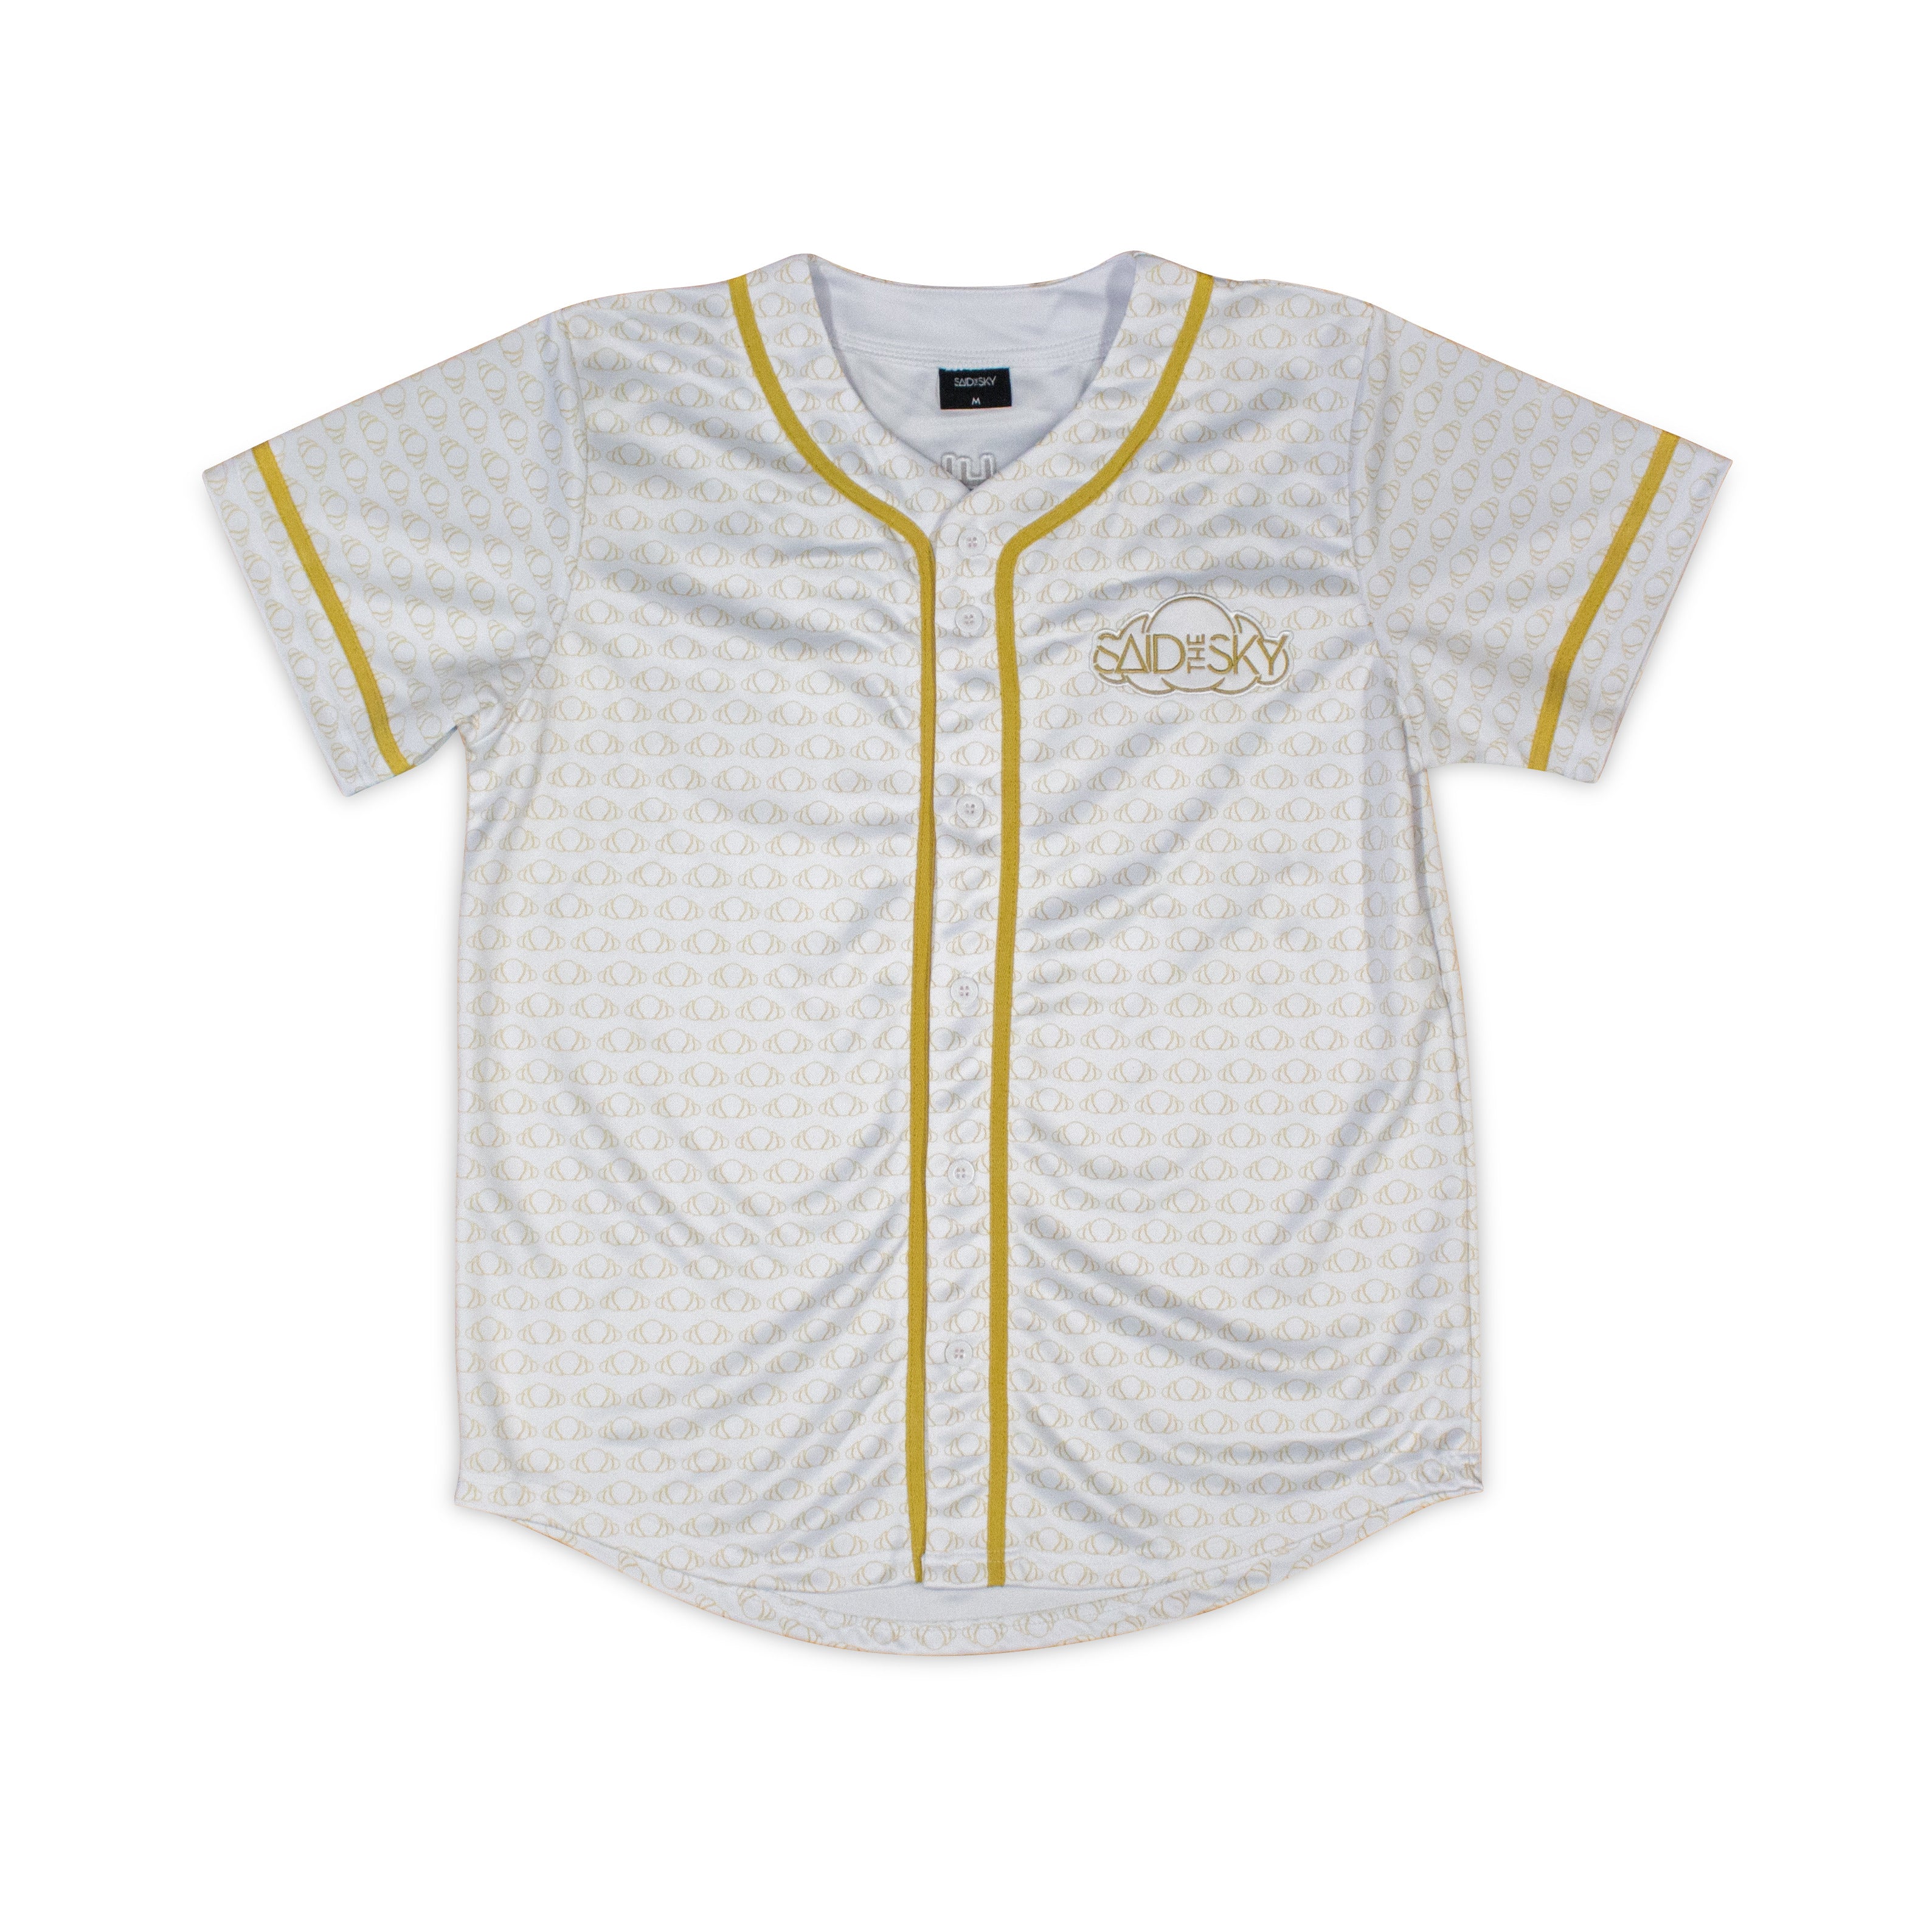 white and yellow baseball jersey